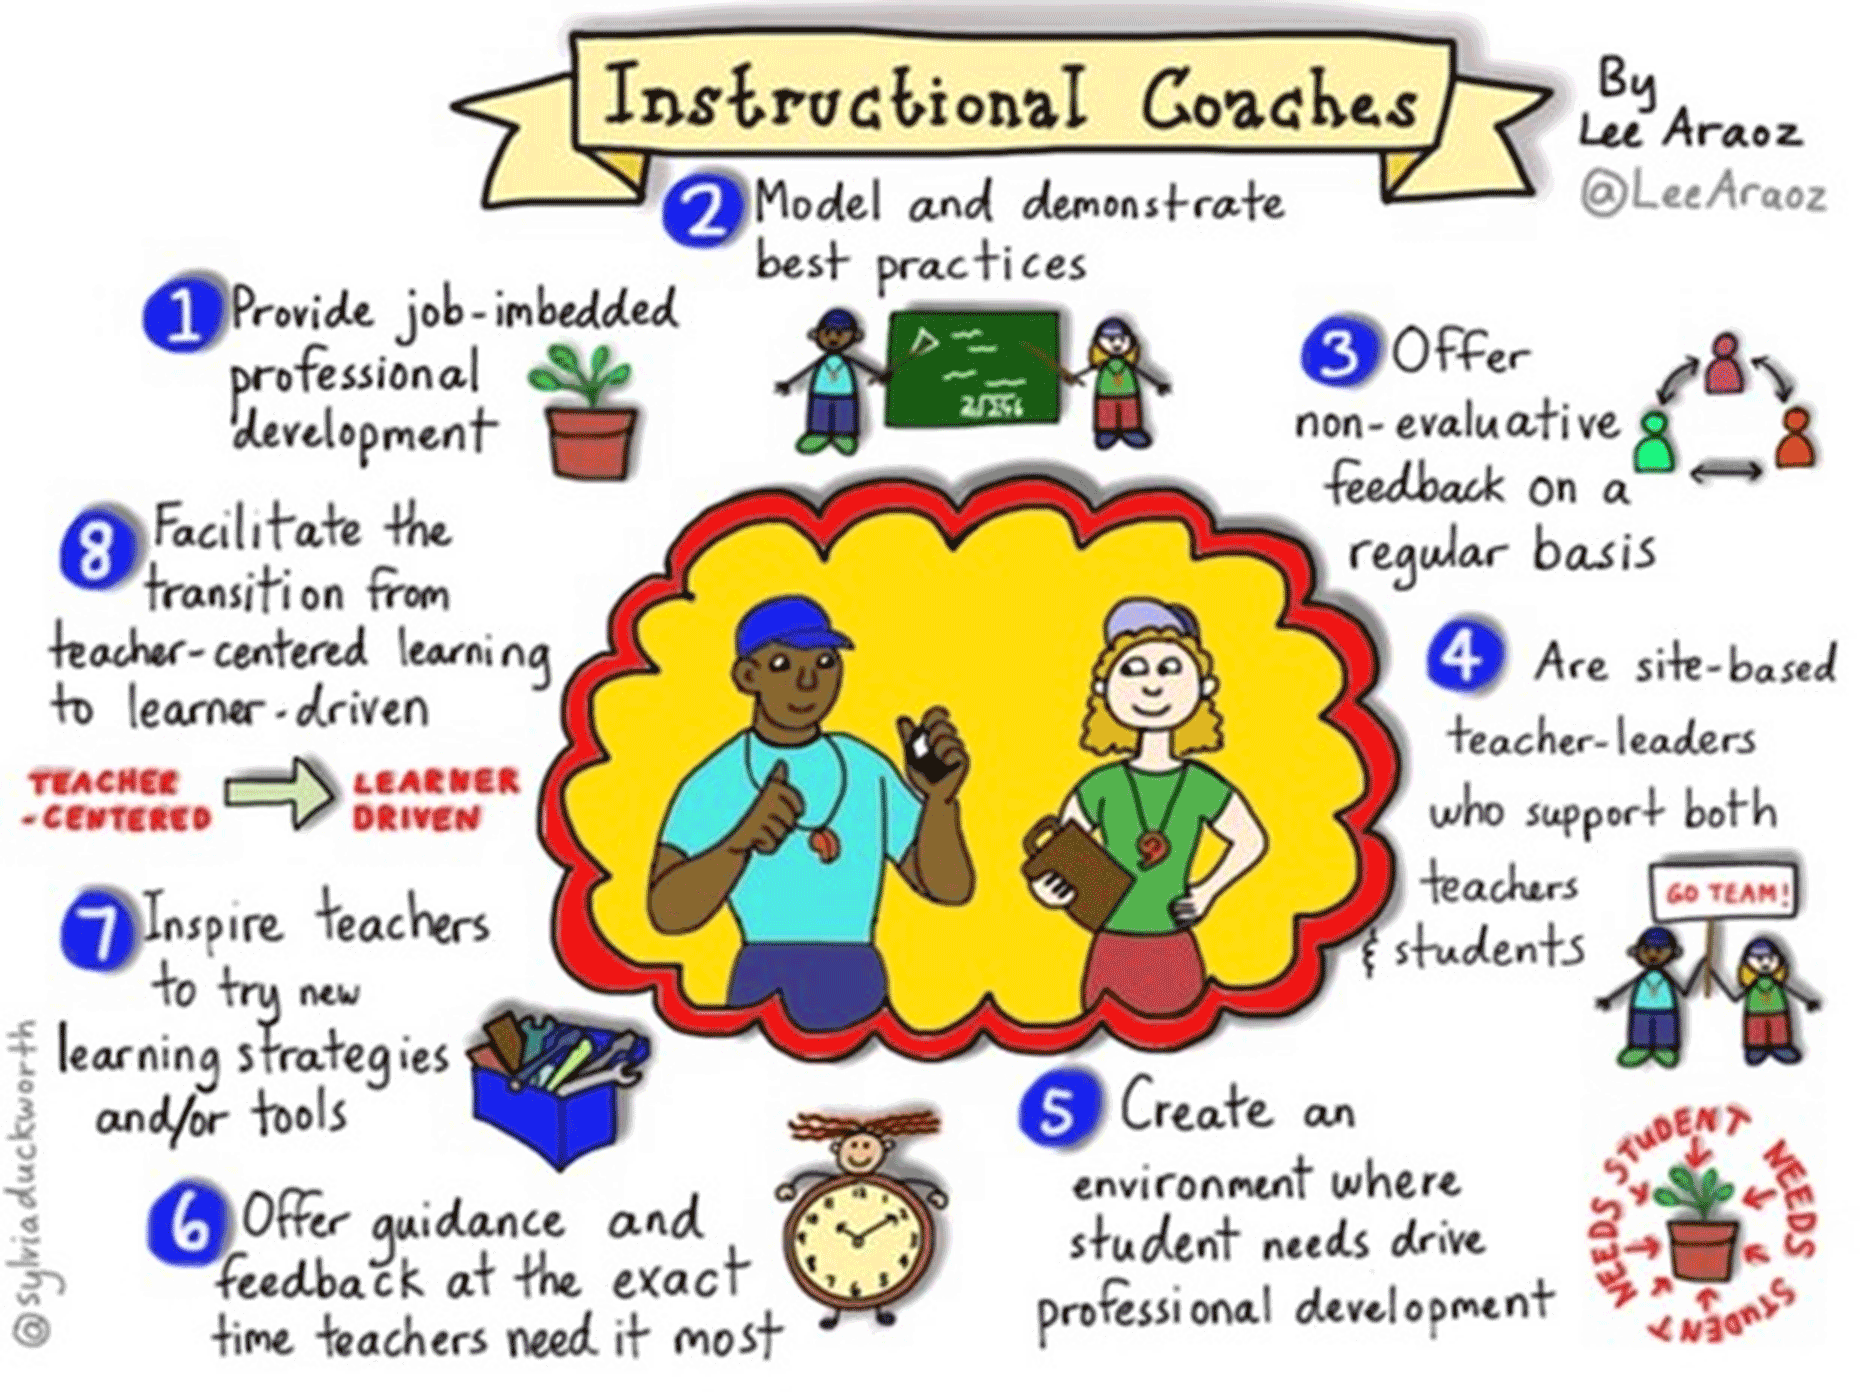 Instructional Coach Methodology